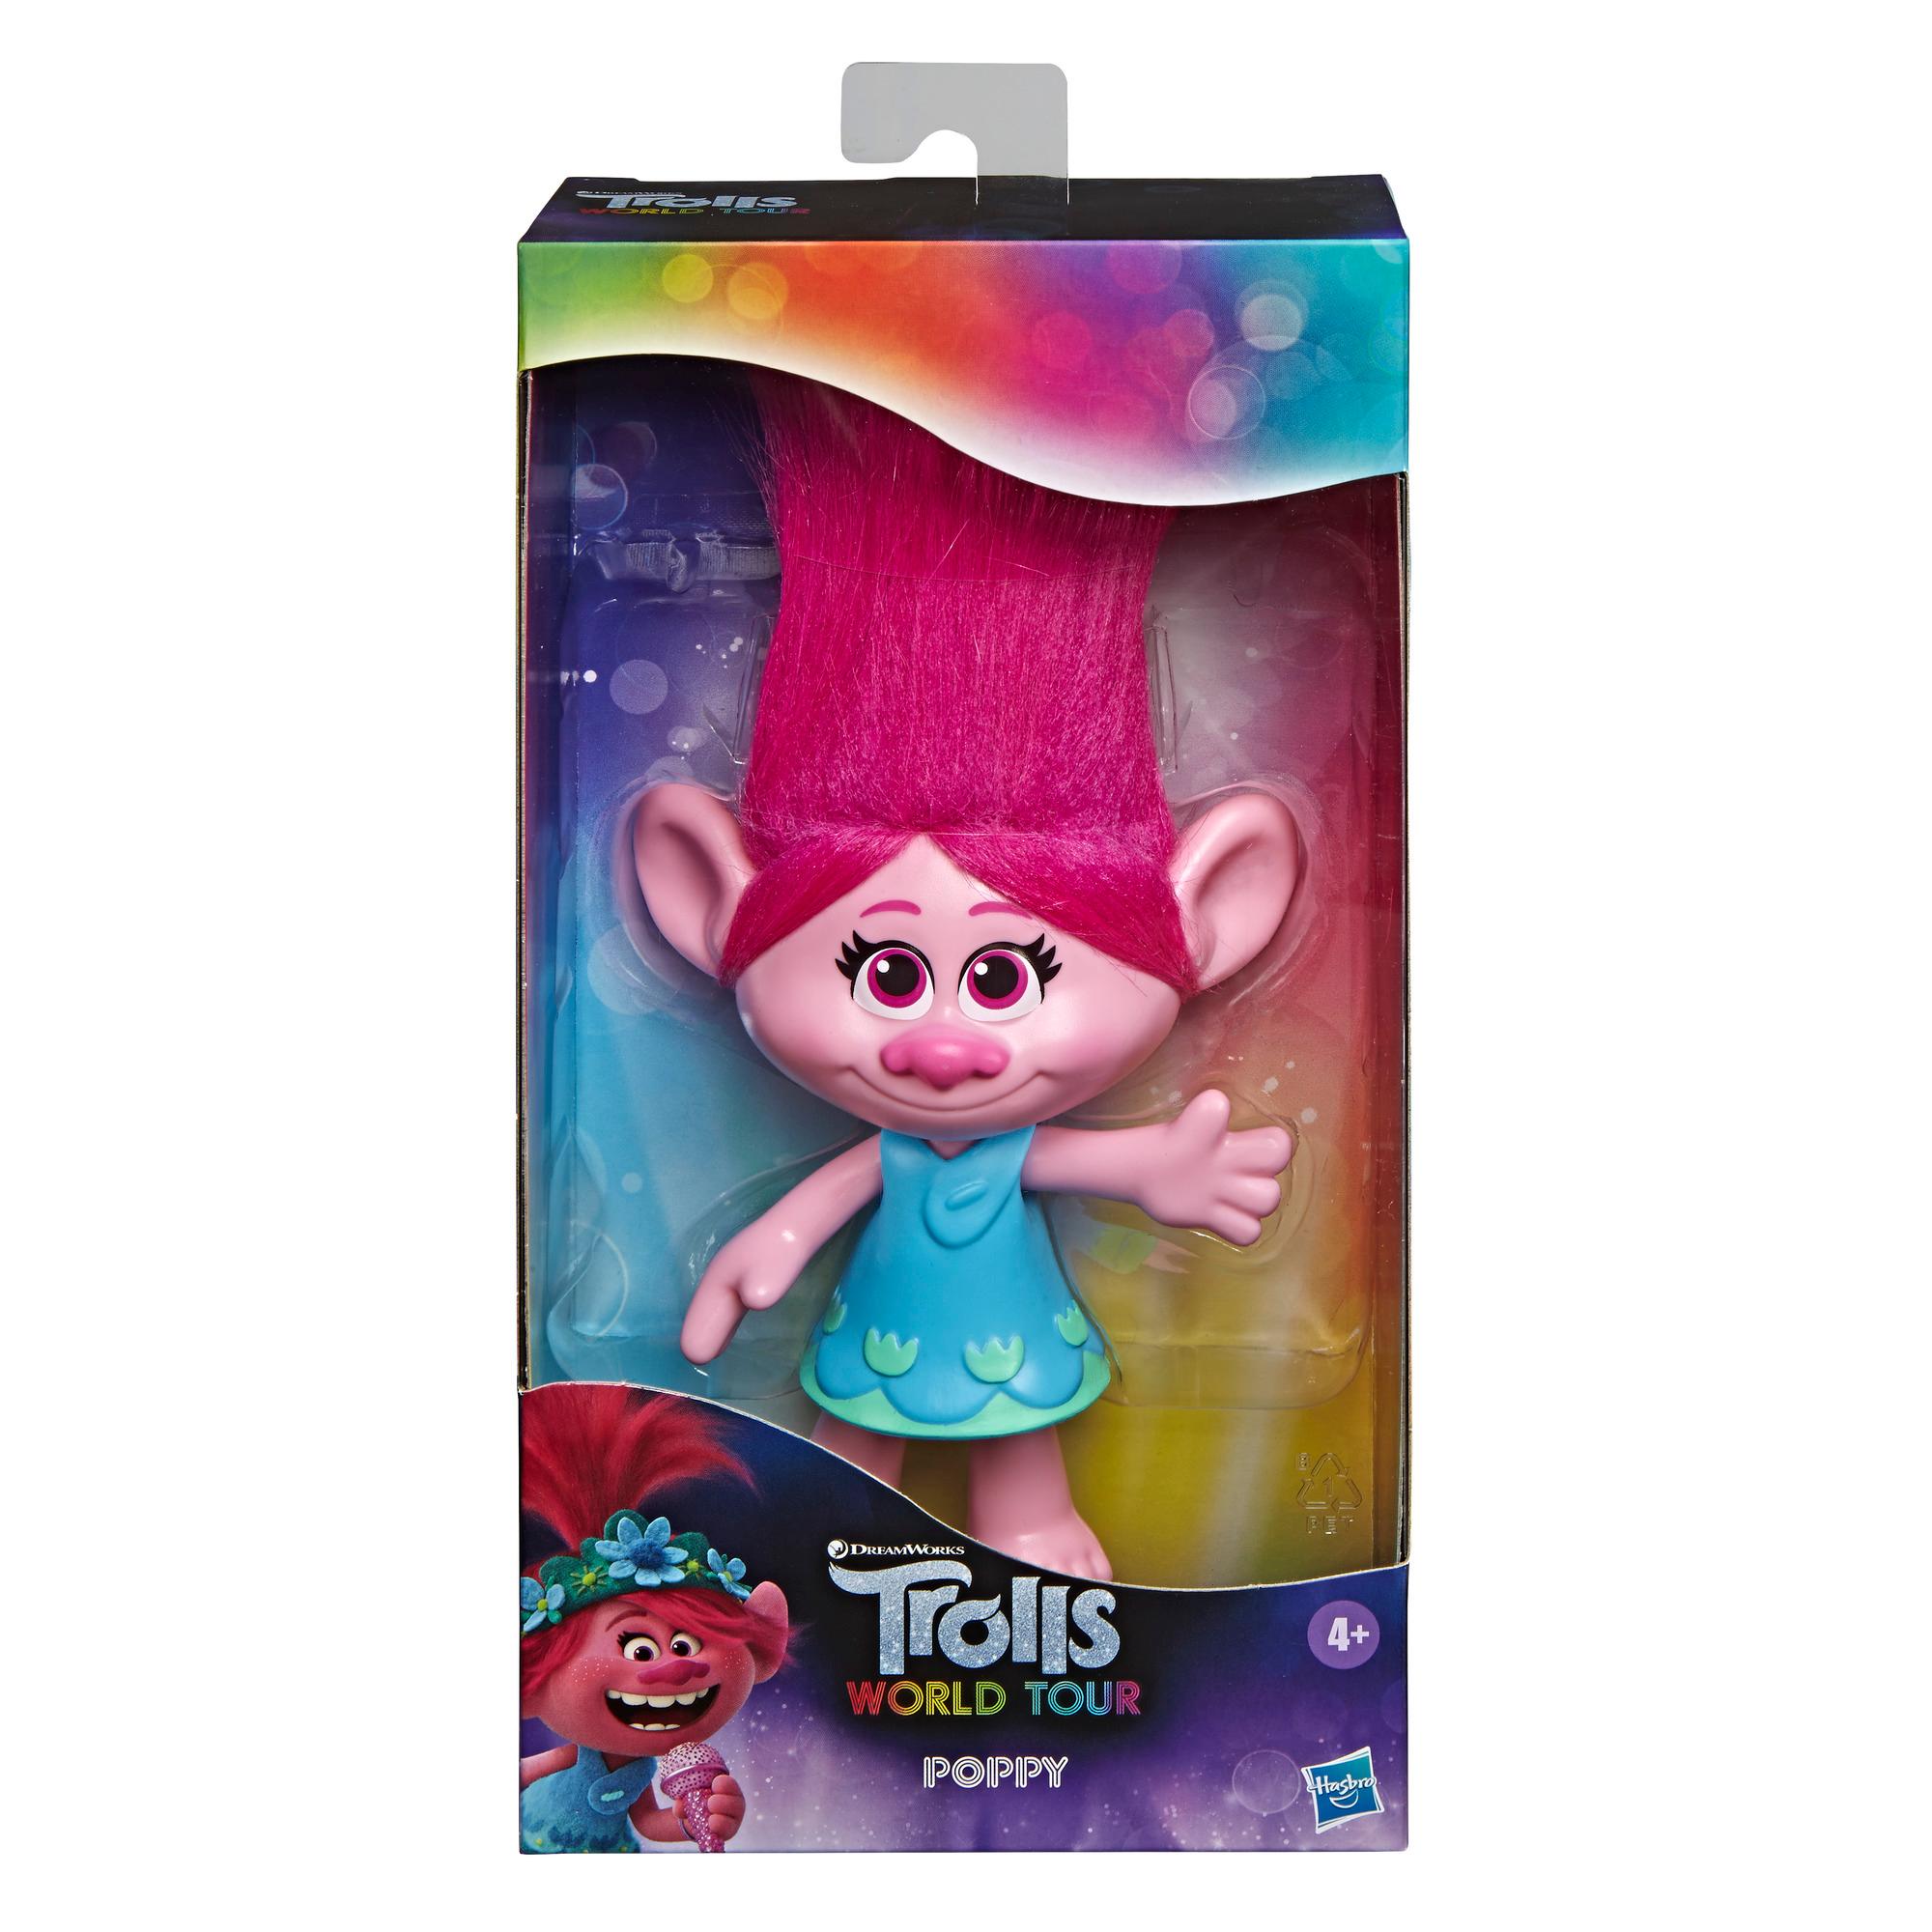 DreamWorks Trolls Poppy com vestido removível, com inspiração no filme Trolls World Tour, brinquedo para crianças acima de 4 anos